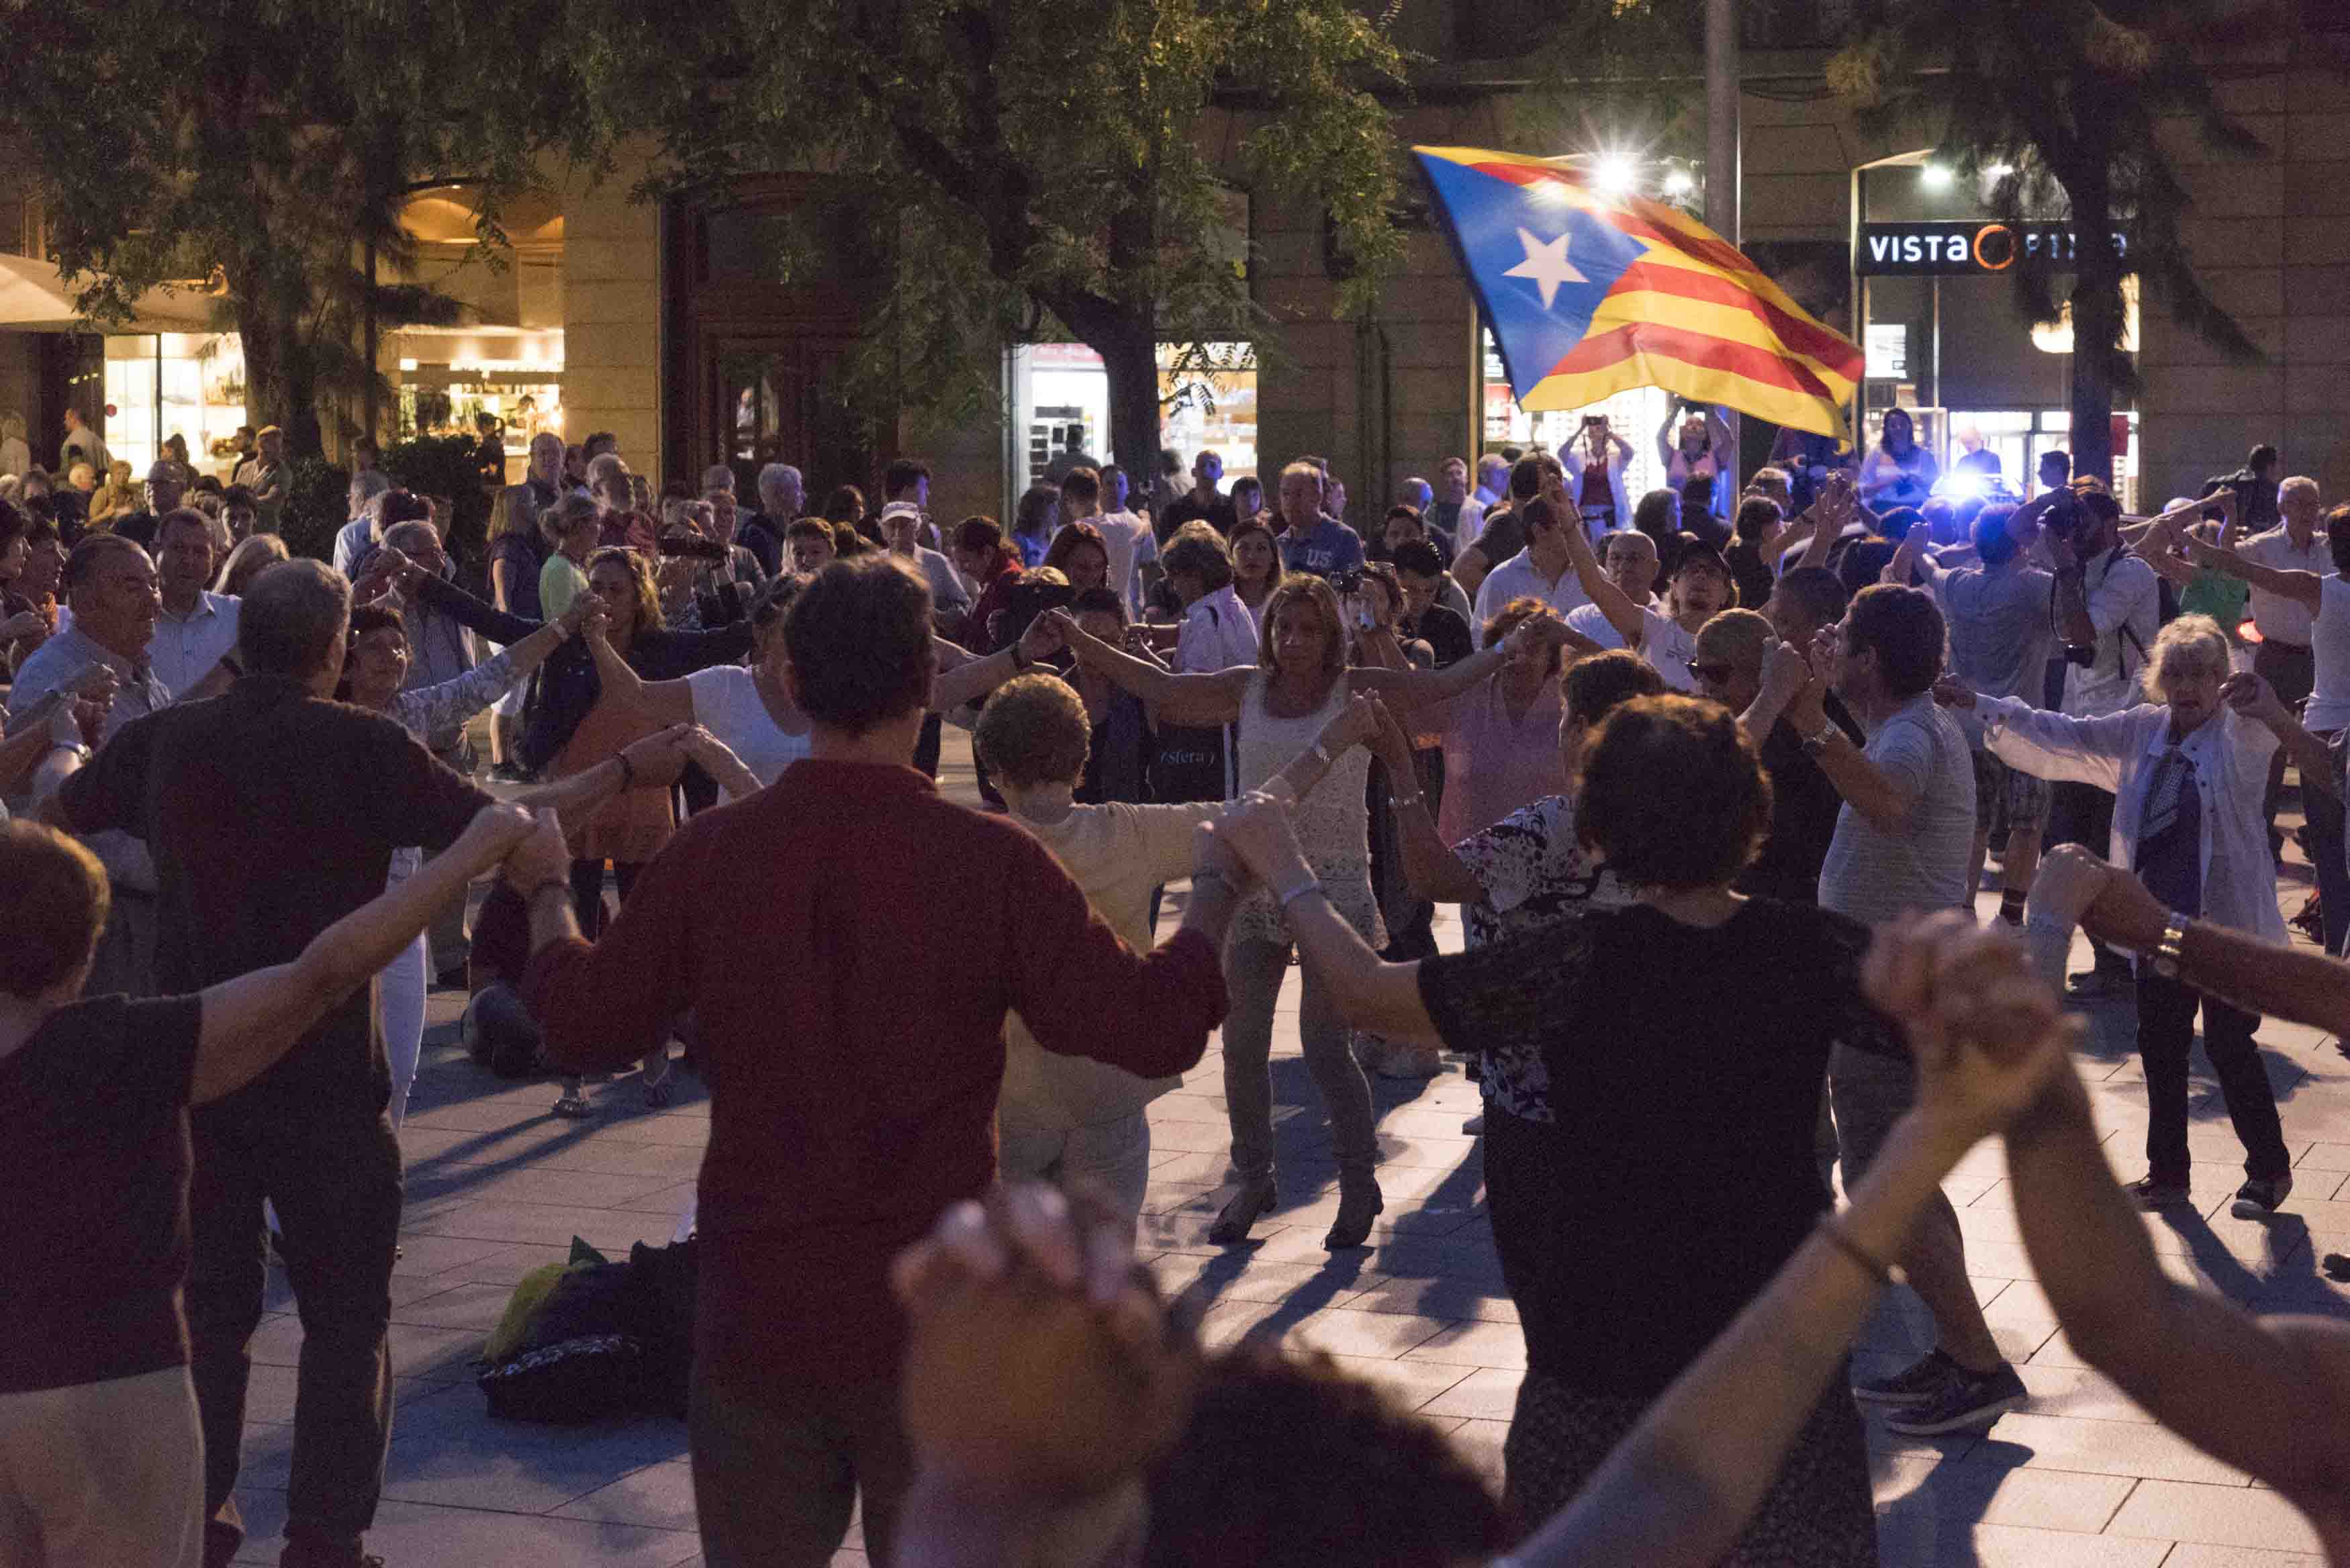 Katalanen tanzen Sardana in Barcelona mit der Fahne der katalanischen Unabhängigkeitsbewegung, Foto: Robert B. Fishman, 4.10.2014